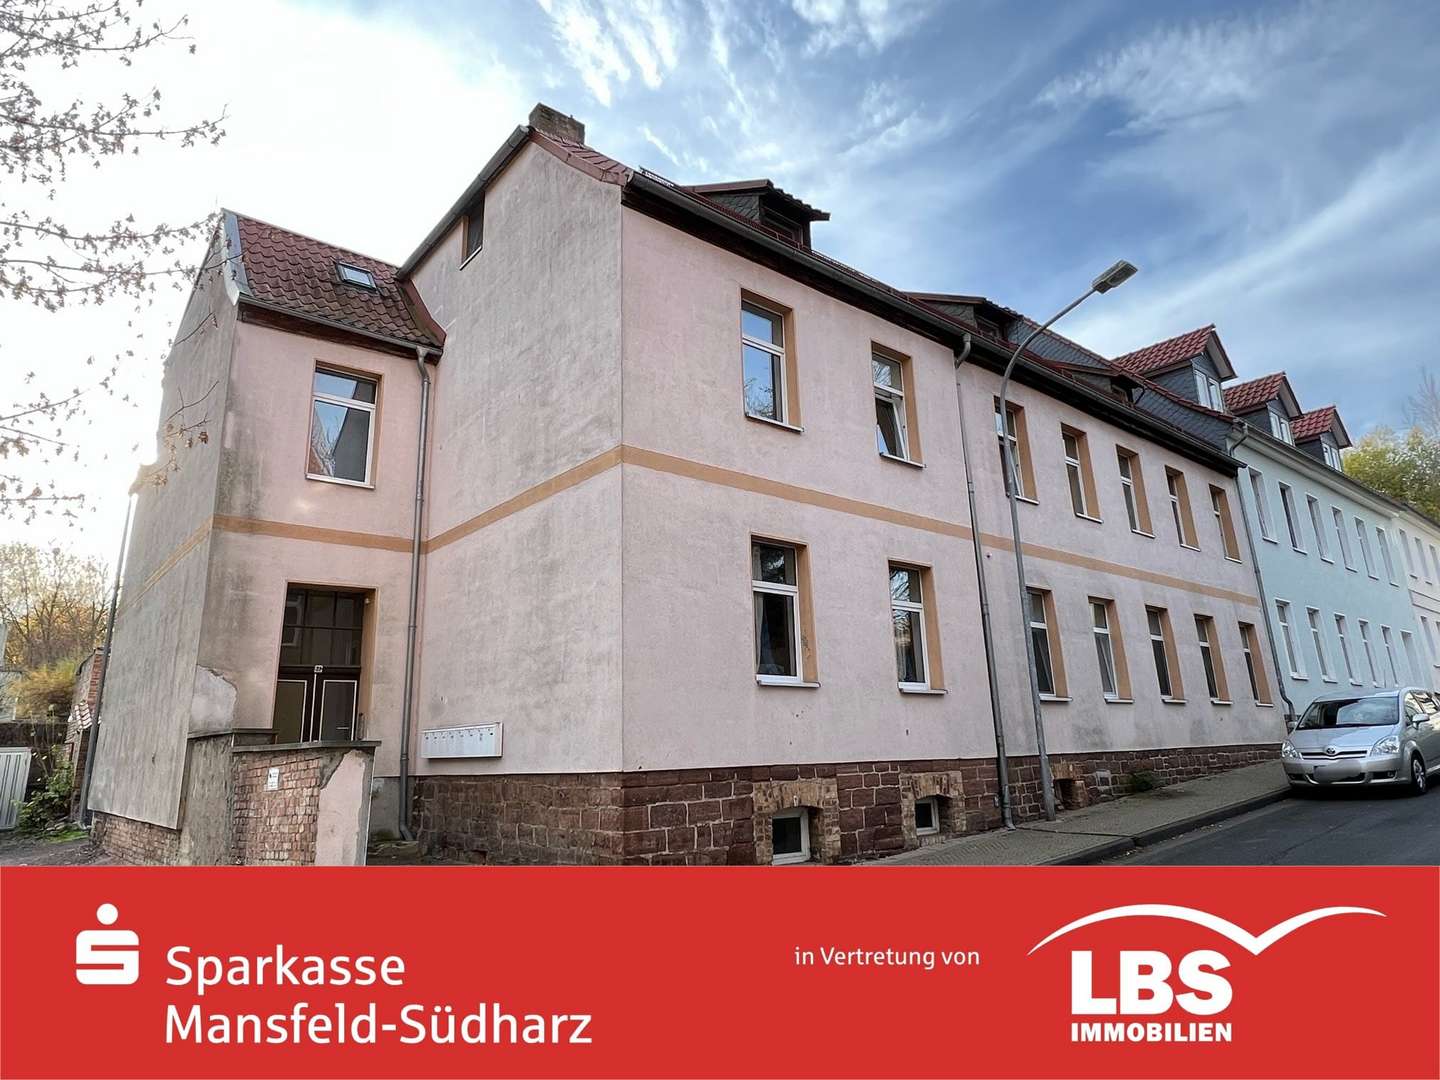 image1 - Mehrfamilienhaus in 06295 Lutherstadt Eisleben mit 505m² kaufen